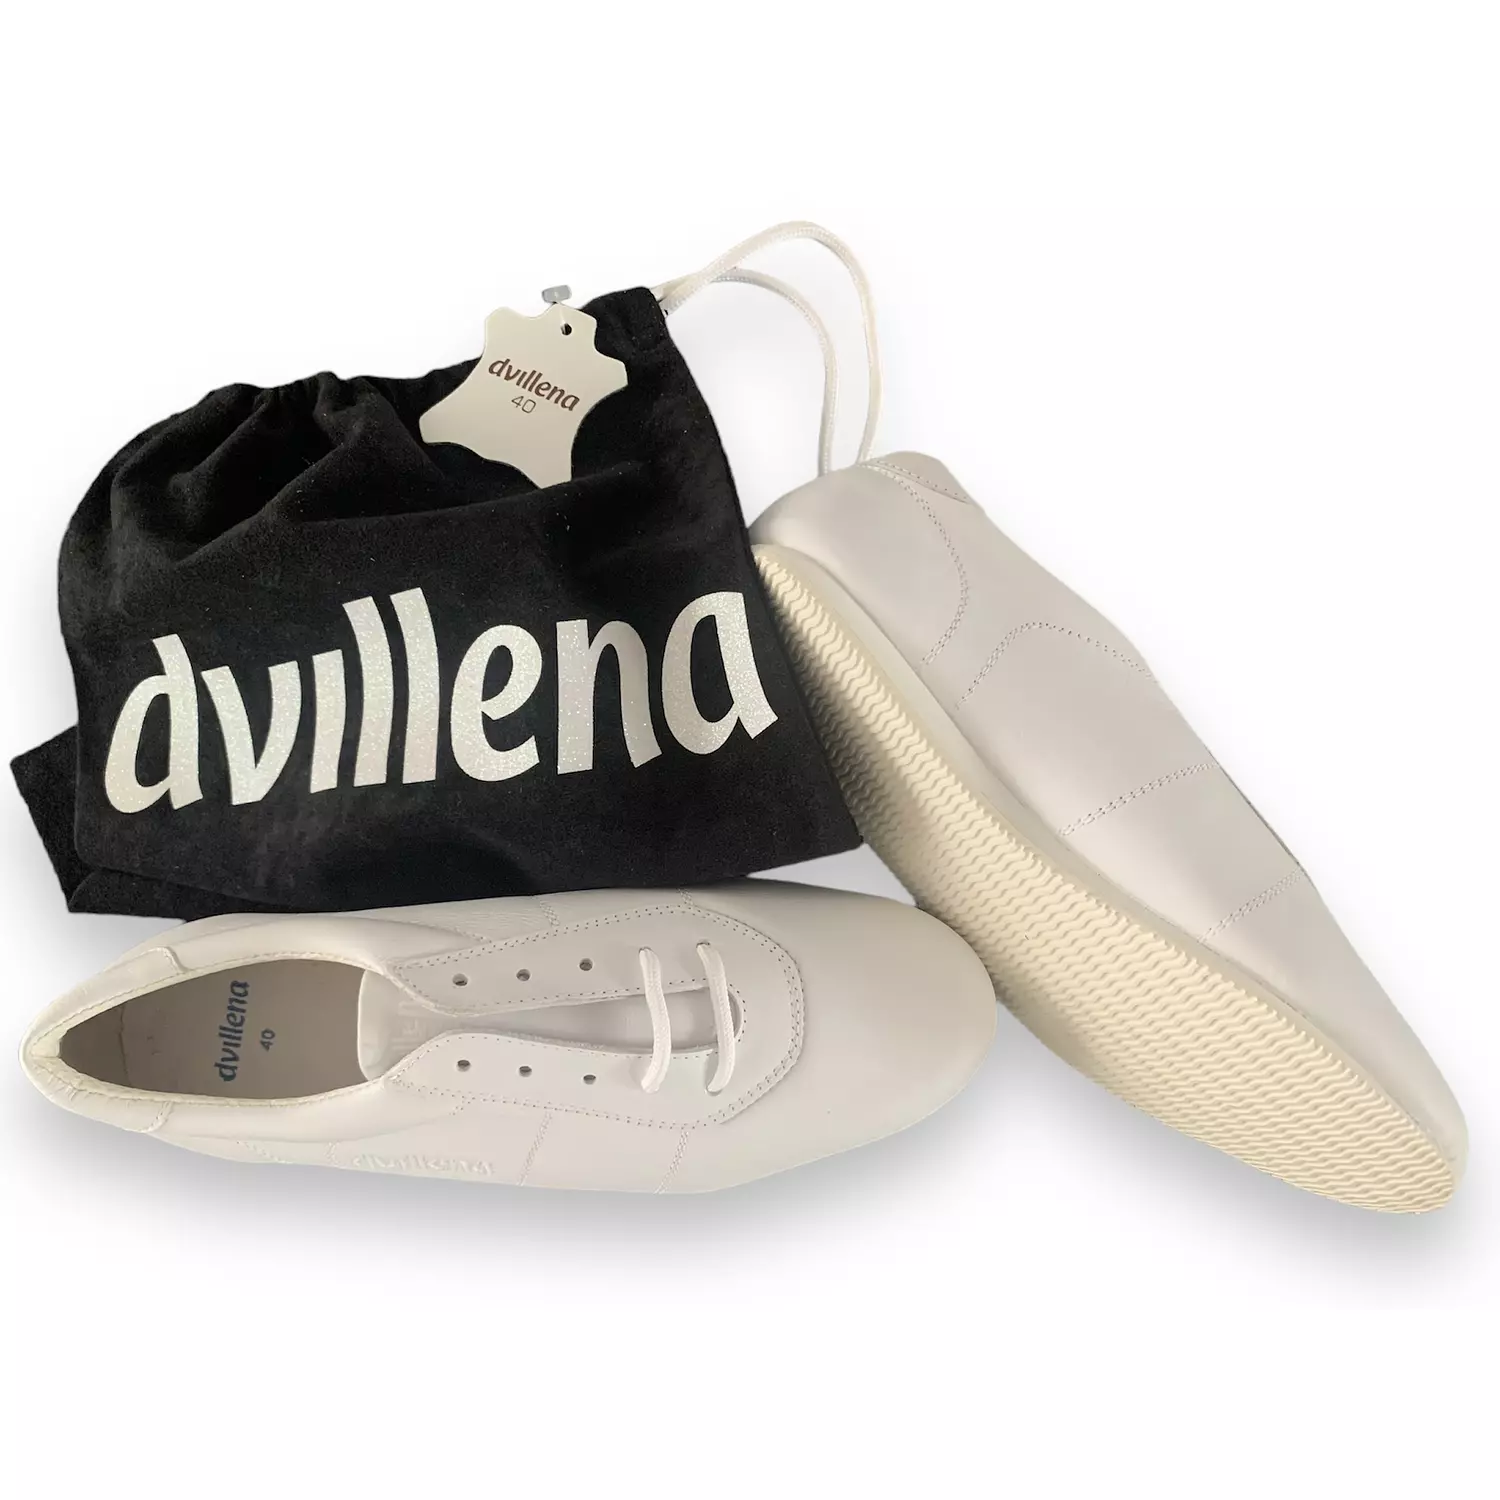 Dvillena-Aerobic Shoes 1